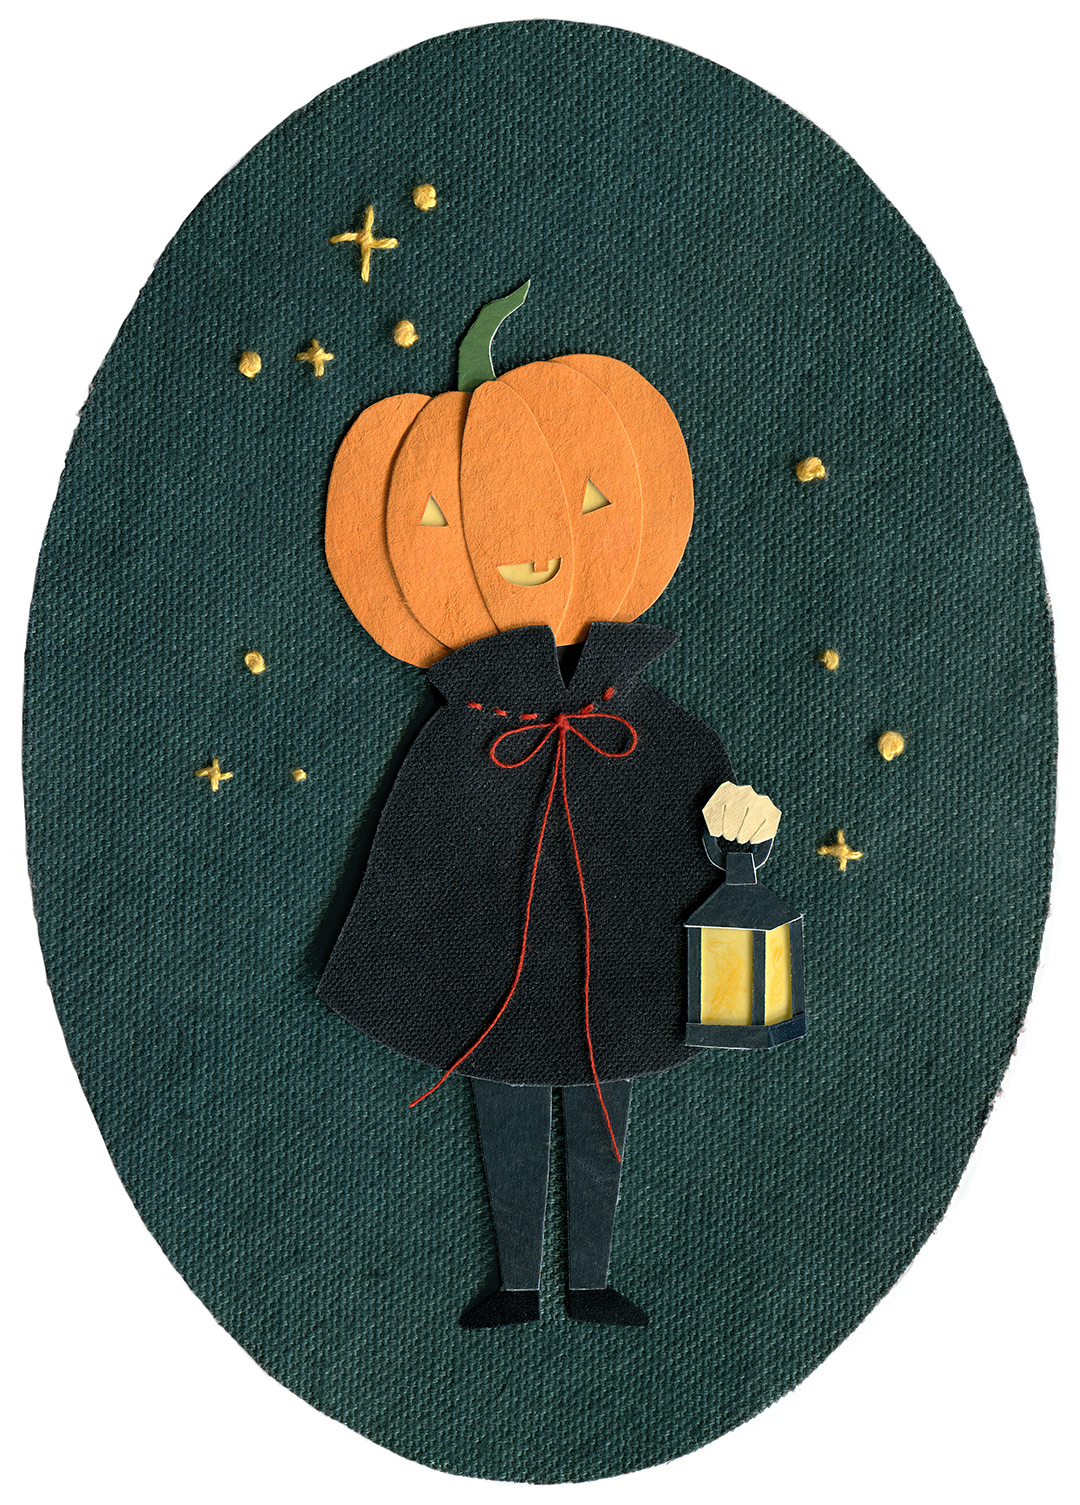 Pumpkin Head Illustration by Miki Sato